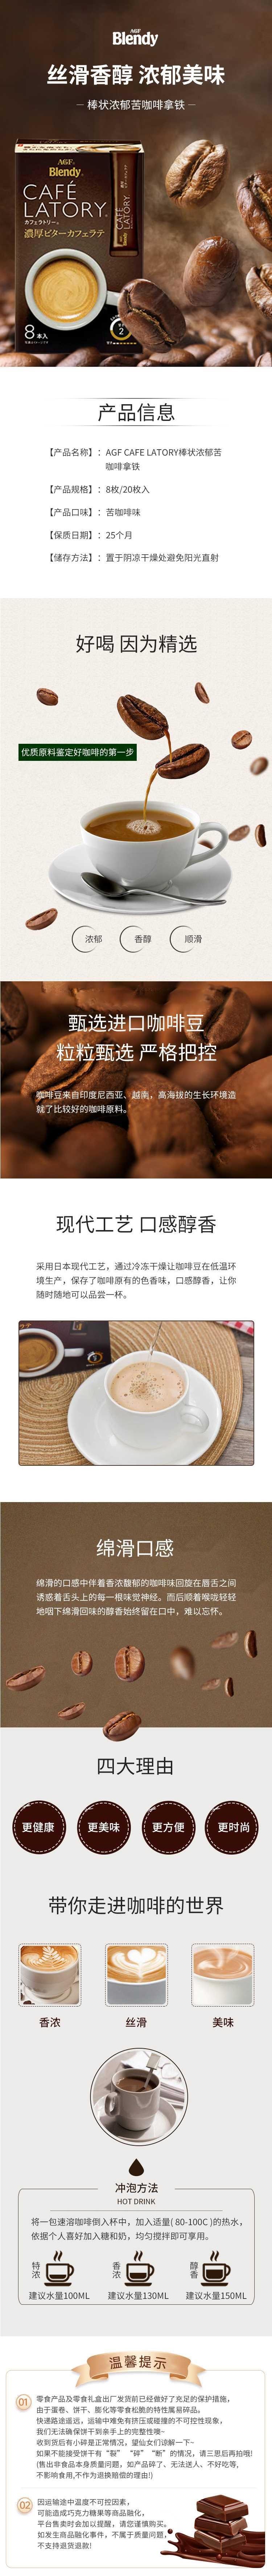 【日本直邮】AGF CAFE LATORY 醇厚微苦拿铁咖啡 20条入